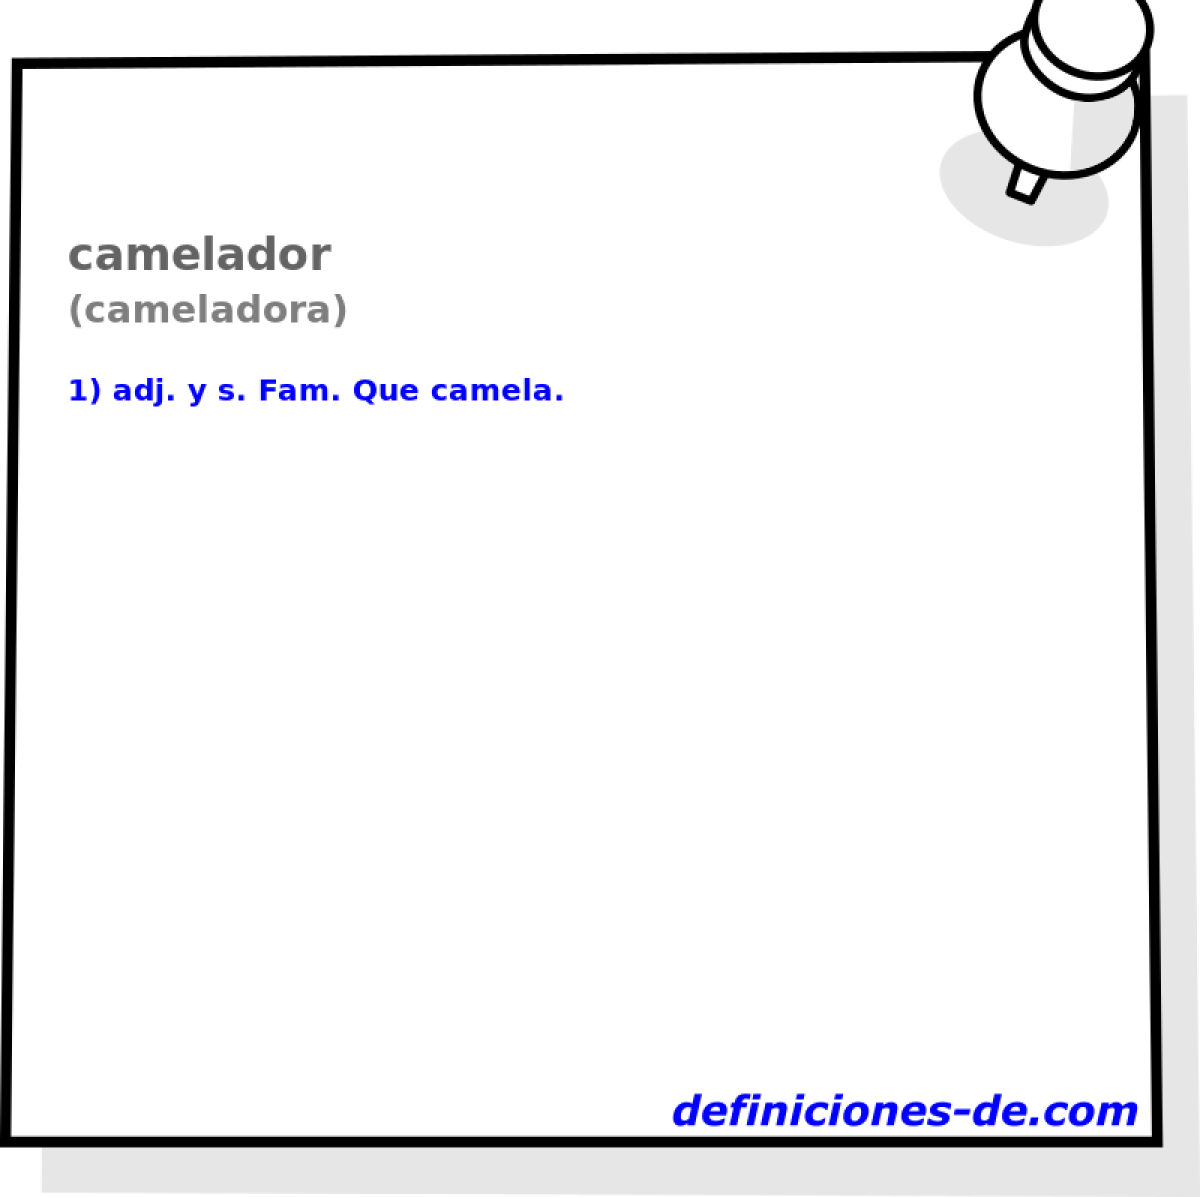 camelador (cameladora)